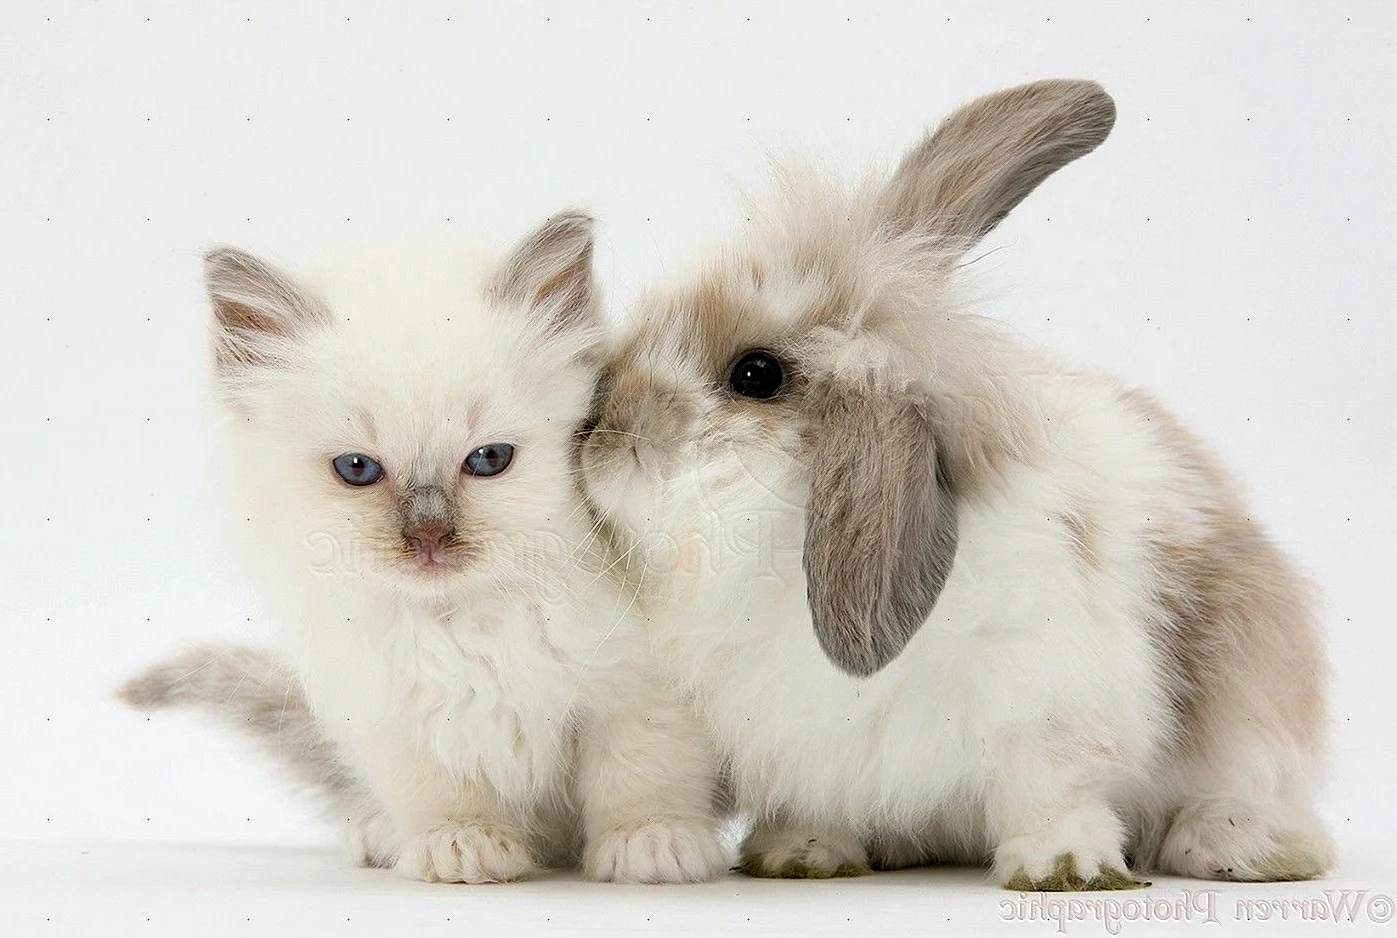 Котята и крольчата